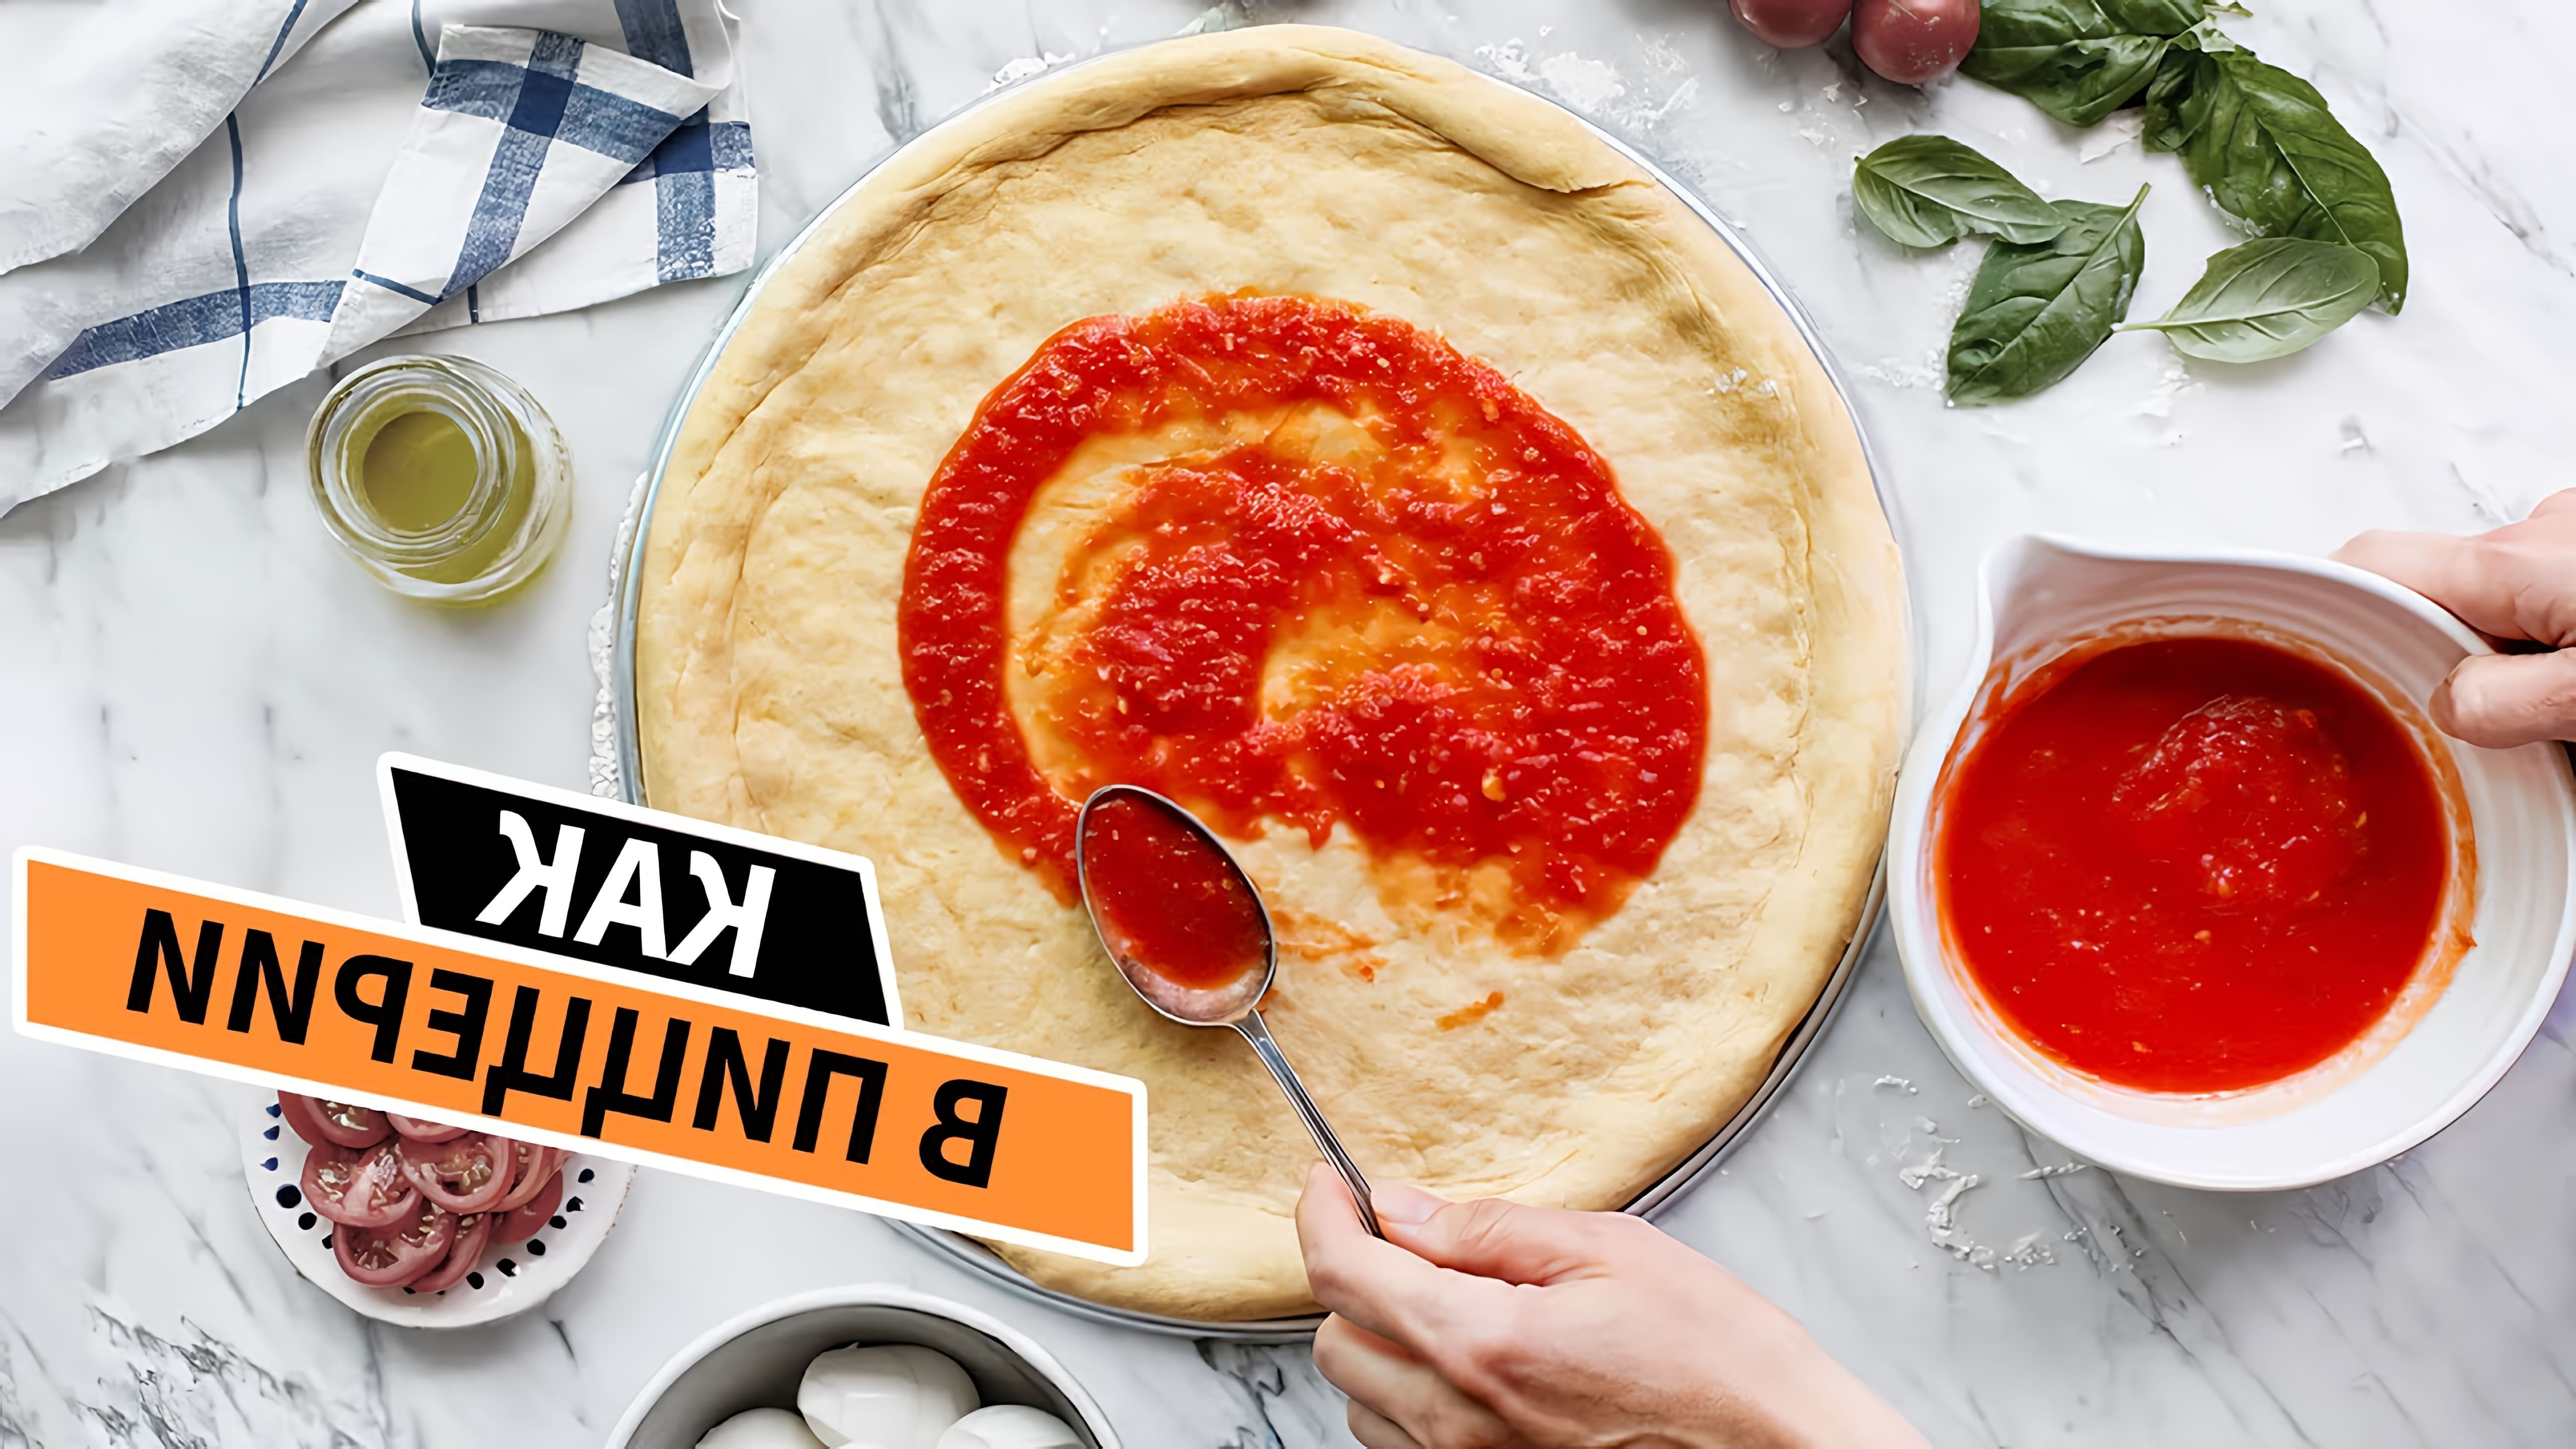 В этом видео демонстрируется рецепт приготовления вкусного томатного соуса для пиццы в домашних условиях